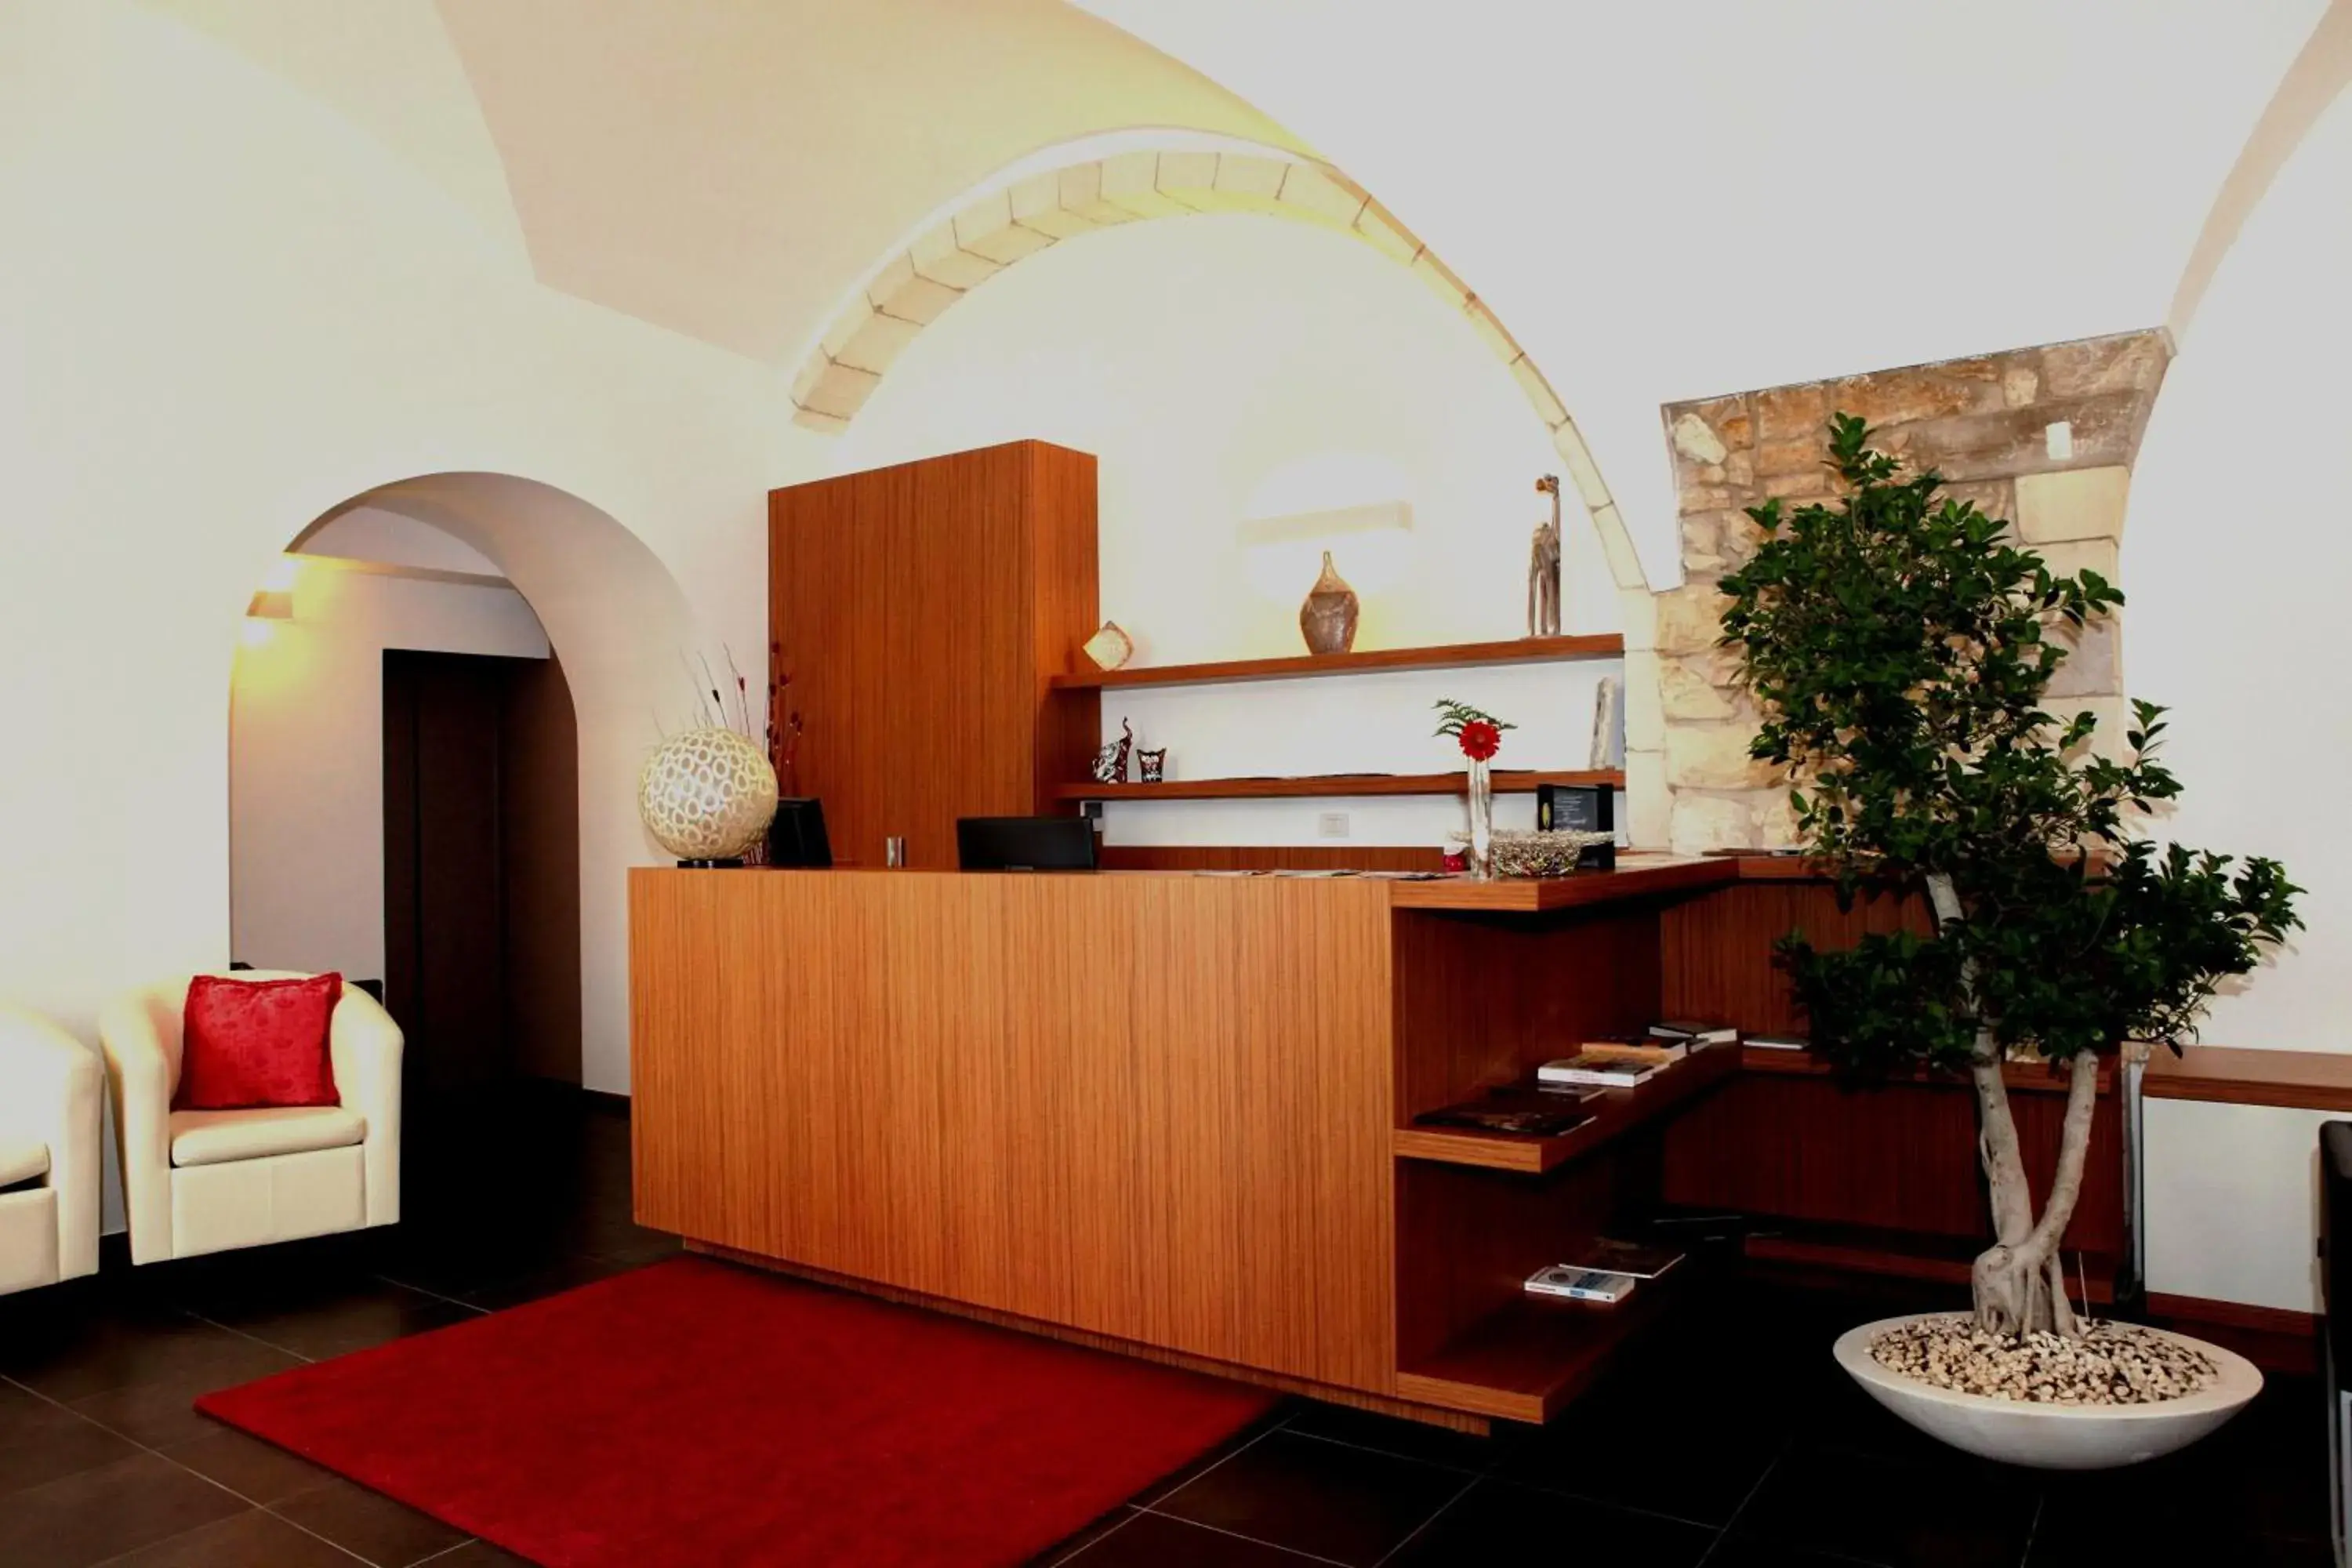 Lobby or reception, Lobby/Reception in Hotel La Dimora di Piazza Carmine